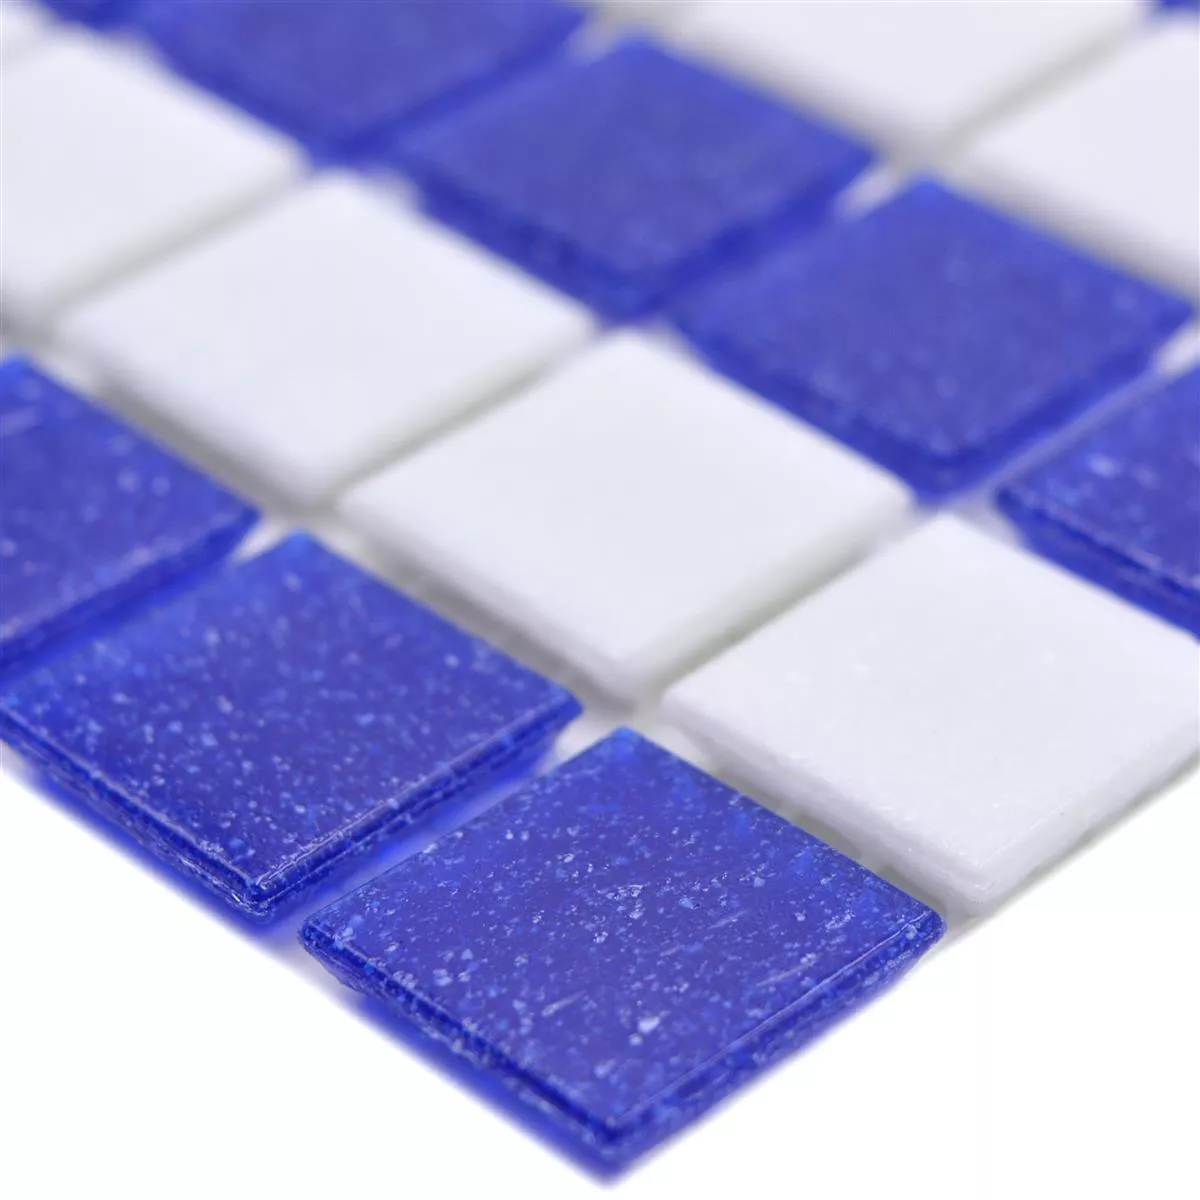 Plavecký Bazén Mozaika Filyos Modrá Bílá Lepený Papír